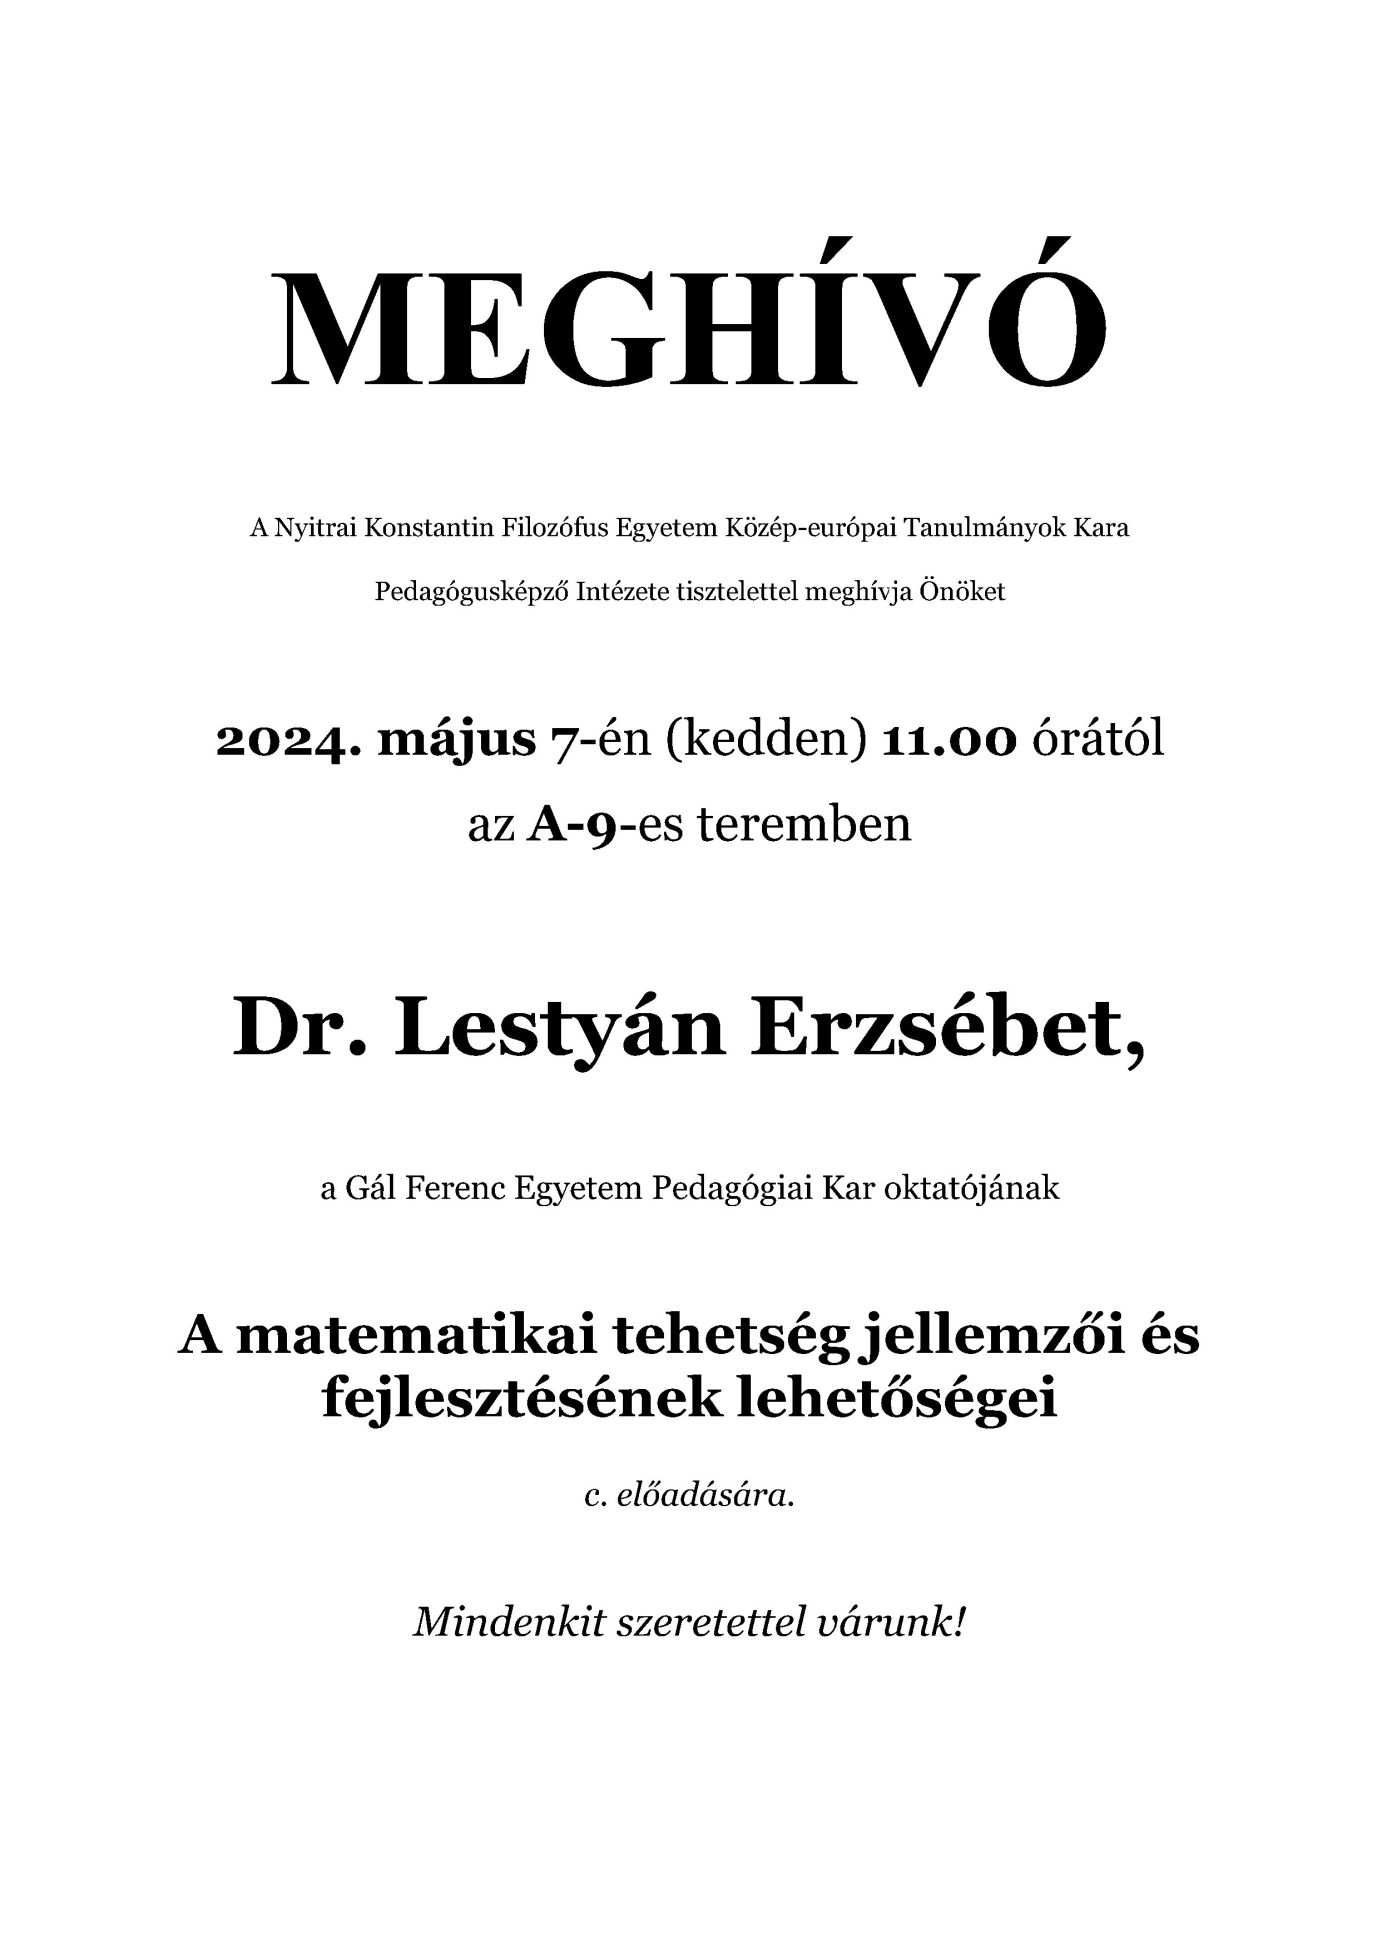 Dr. Lestyán Erzsébet